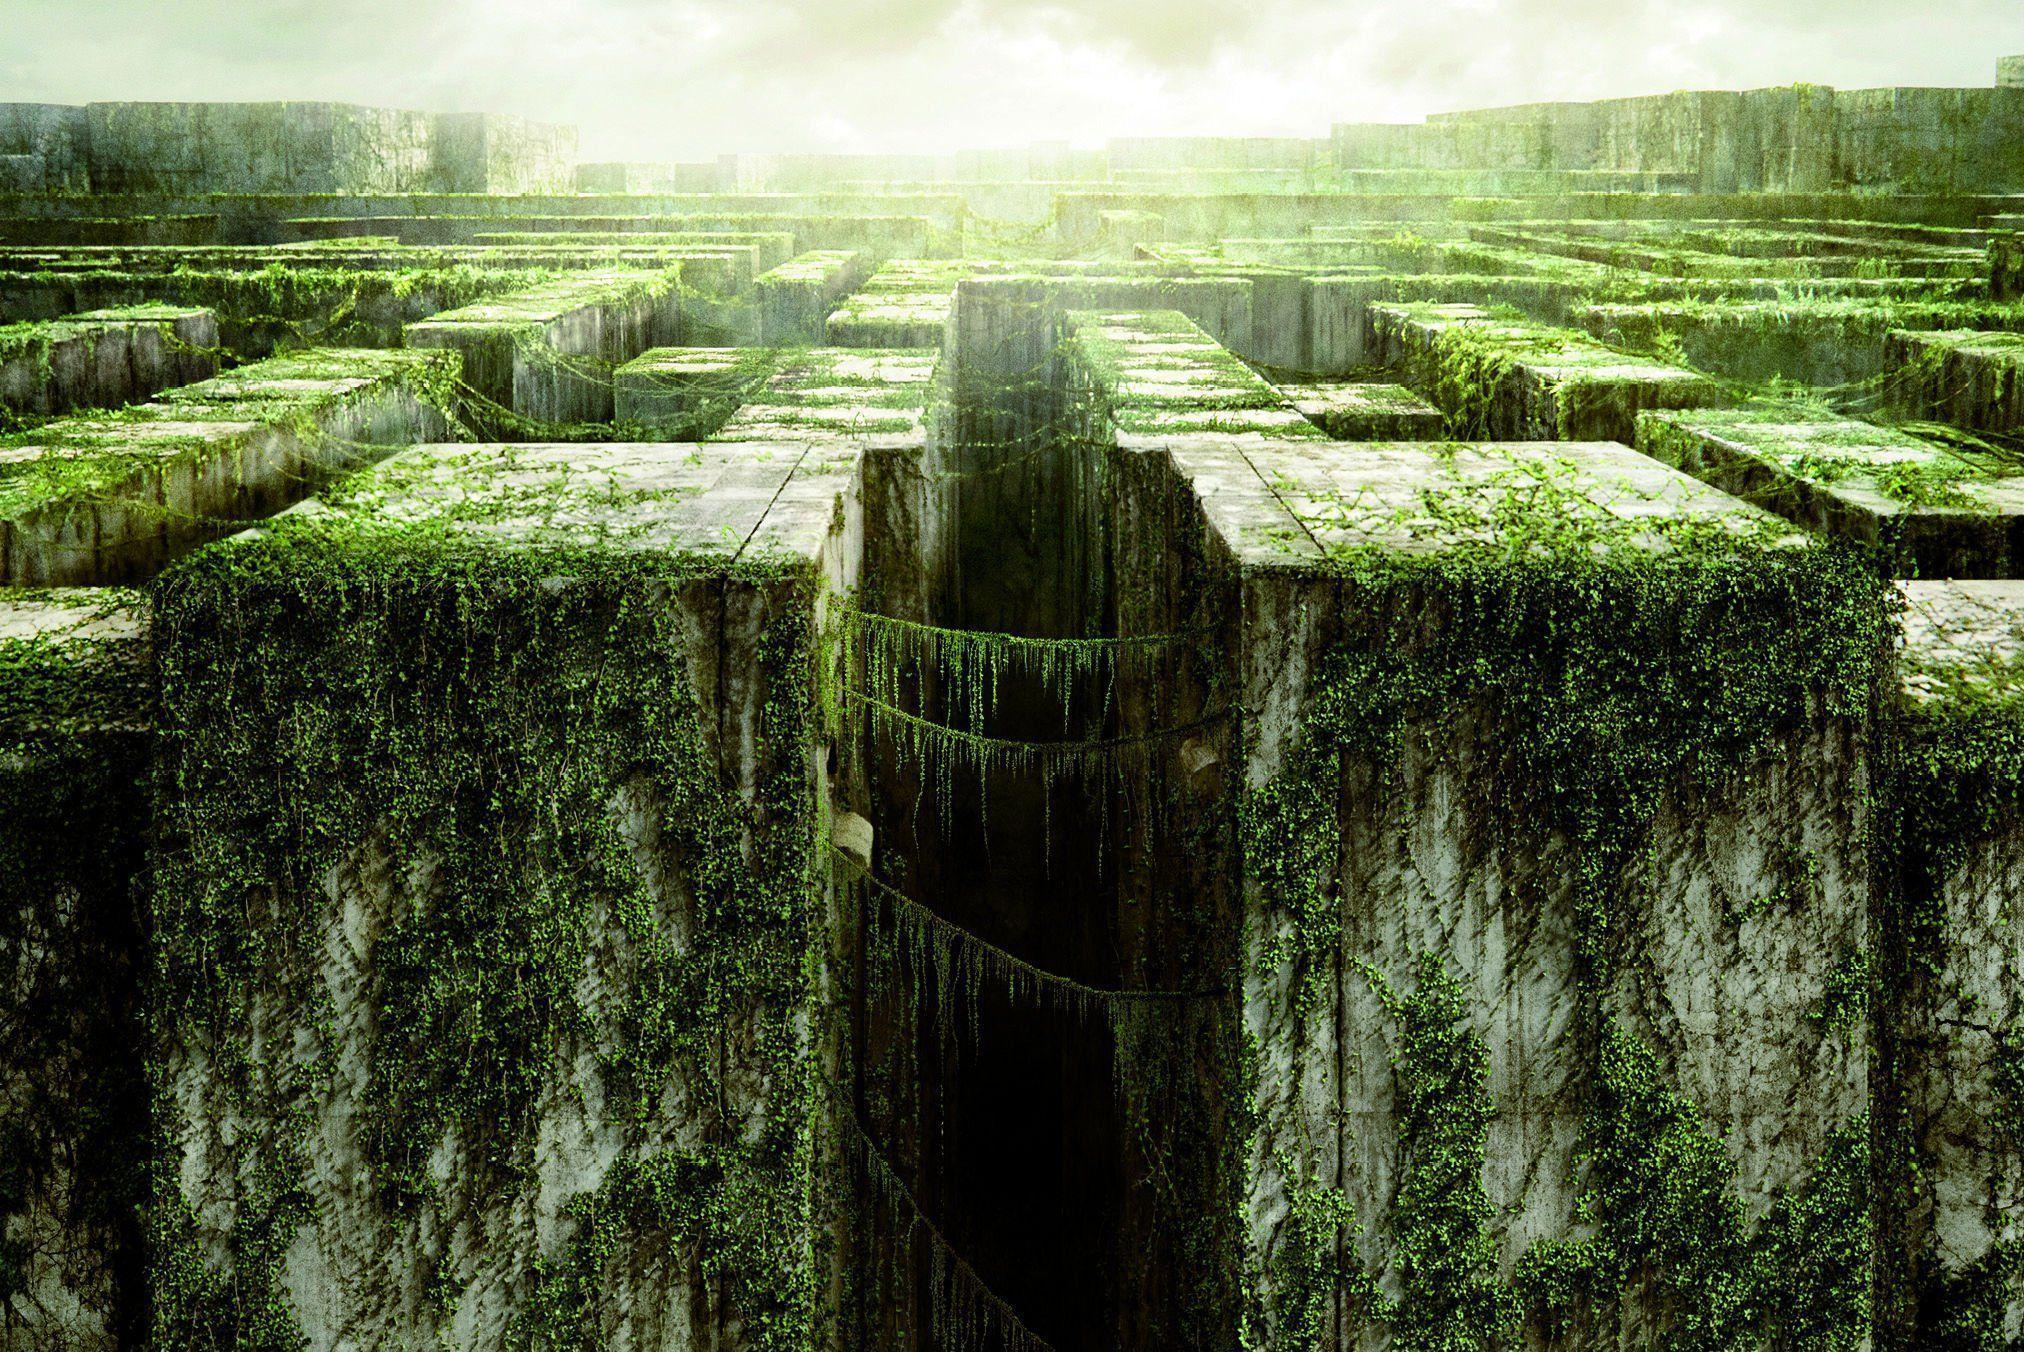 HD The Maze Runner Movie Wallpaper